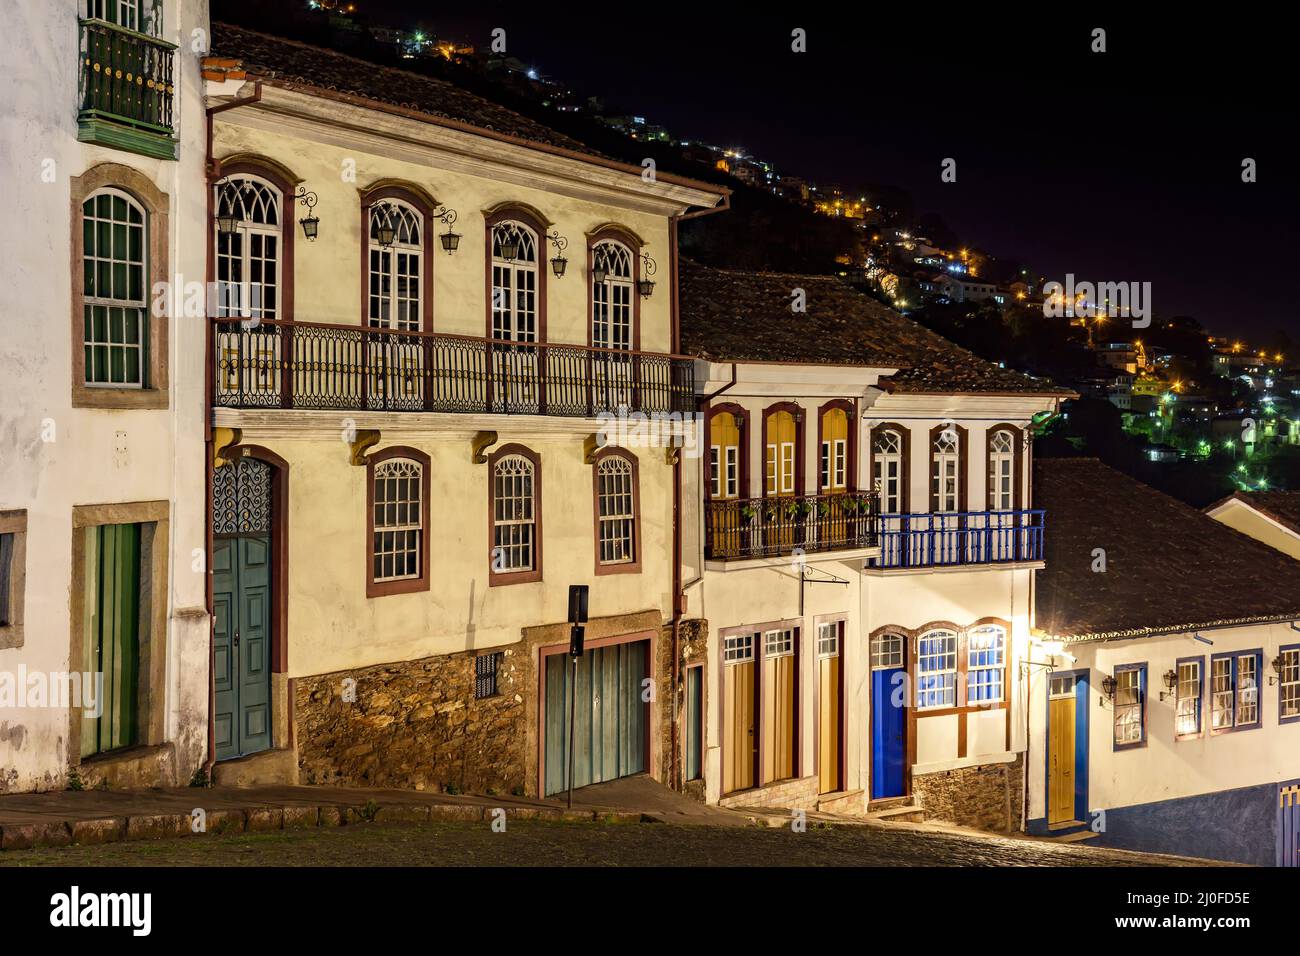 Fachadas de casas de arquitectura colonial en una antigua calle empedrada iluminada por la noche Foto de stock